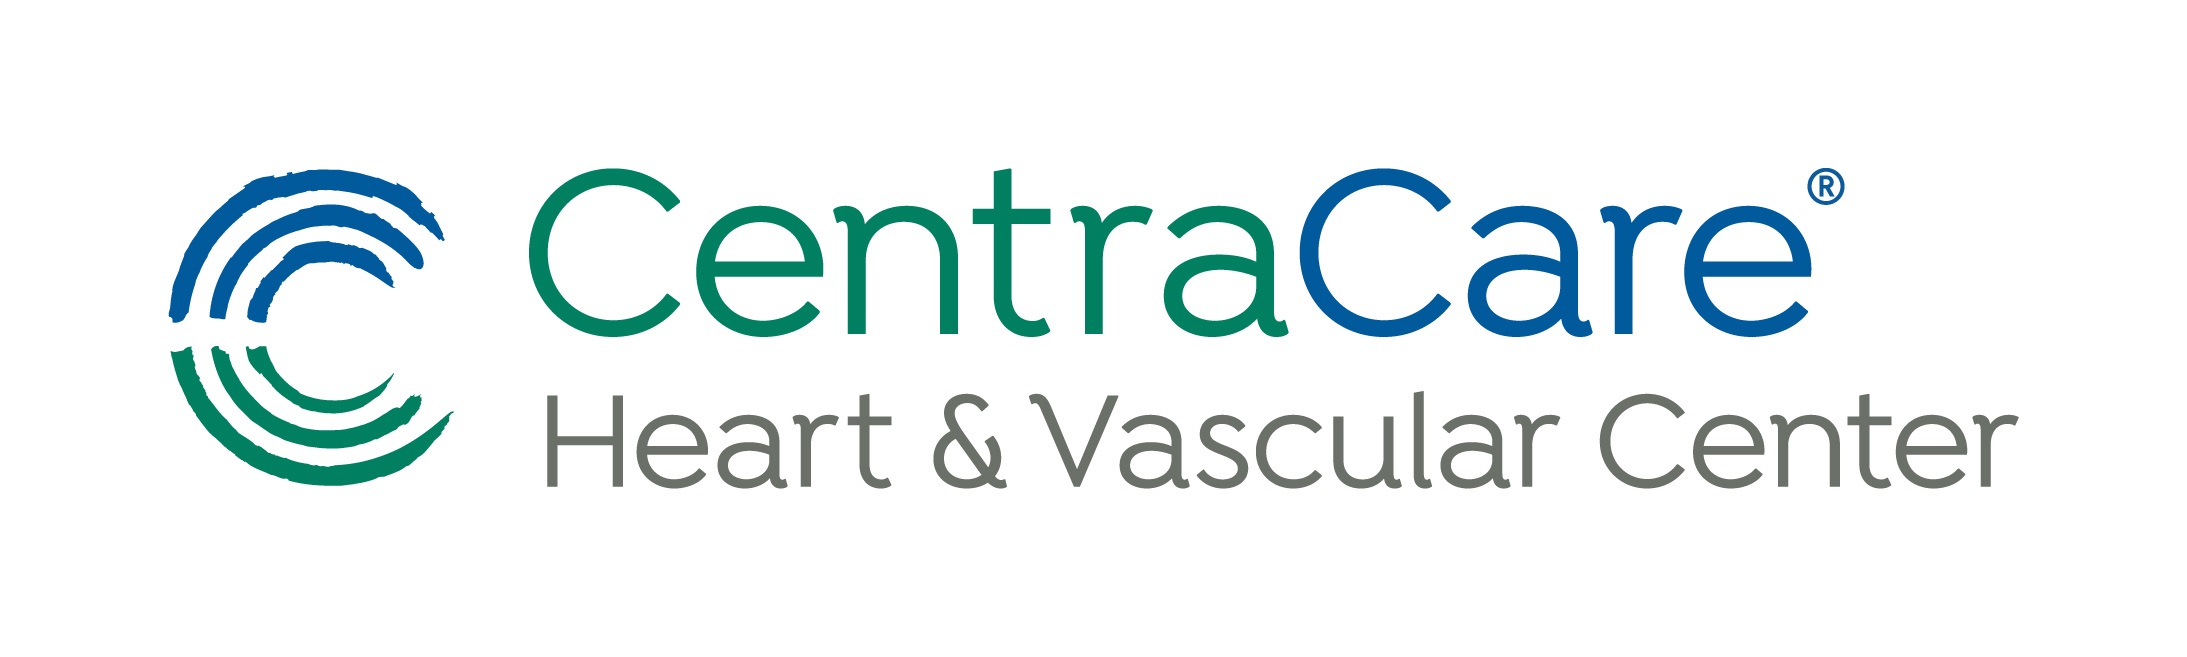 CentraCare Heart & Vascular Center